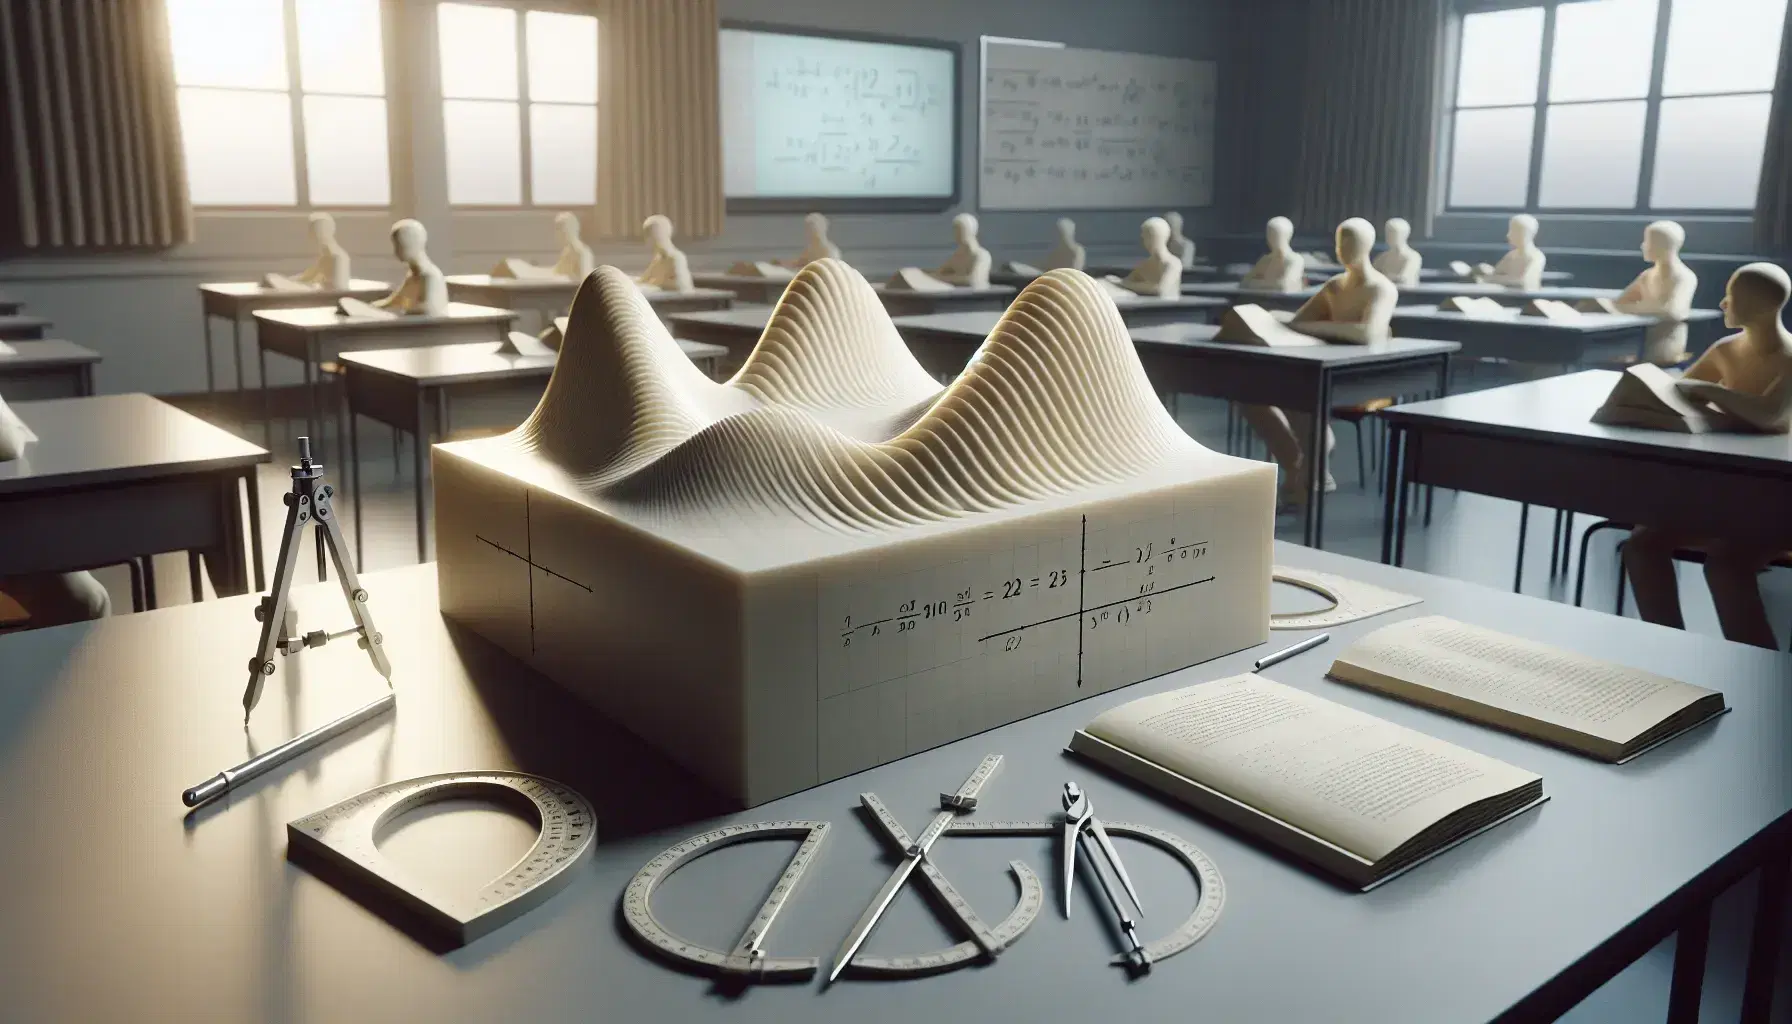 Modello tridimensionale di superficie matematica in aula universitaria con strumenti di misura e studenti sfocati sullo sfondo.